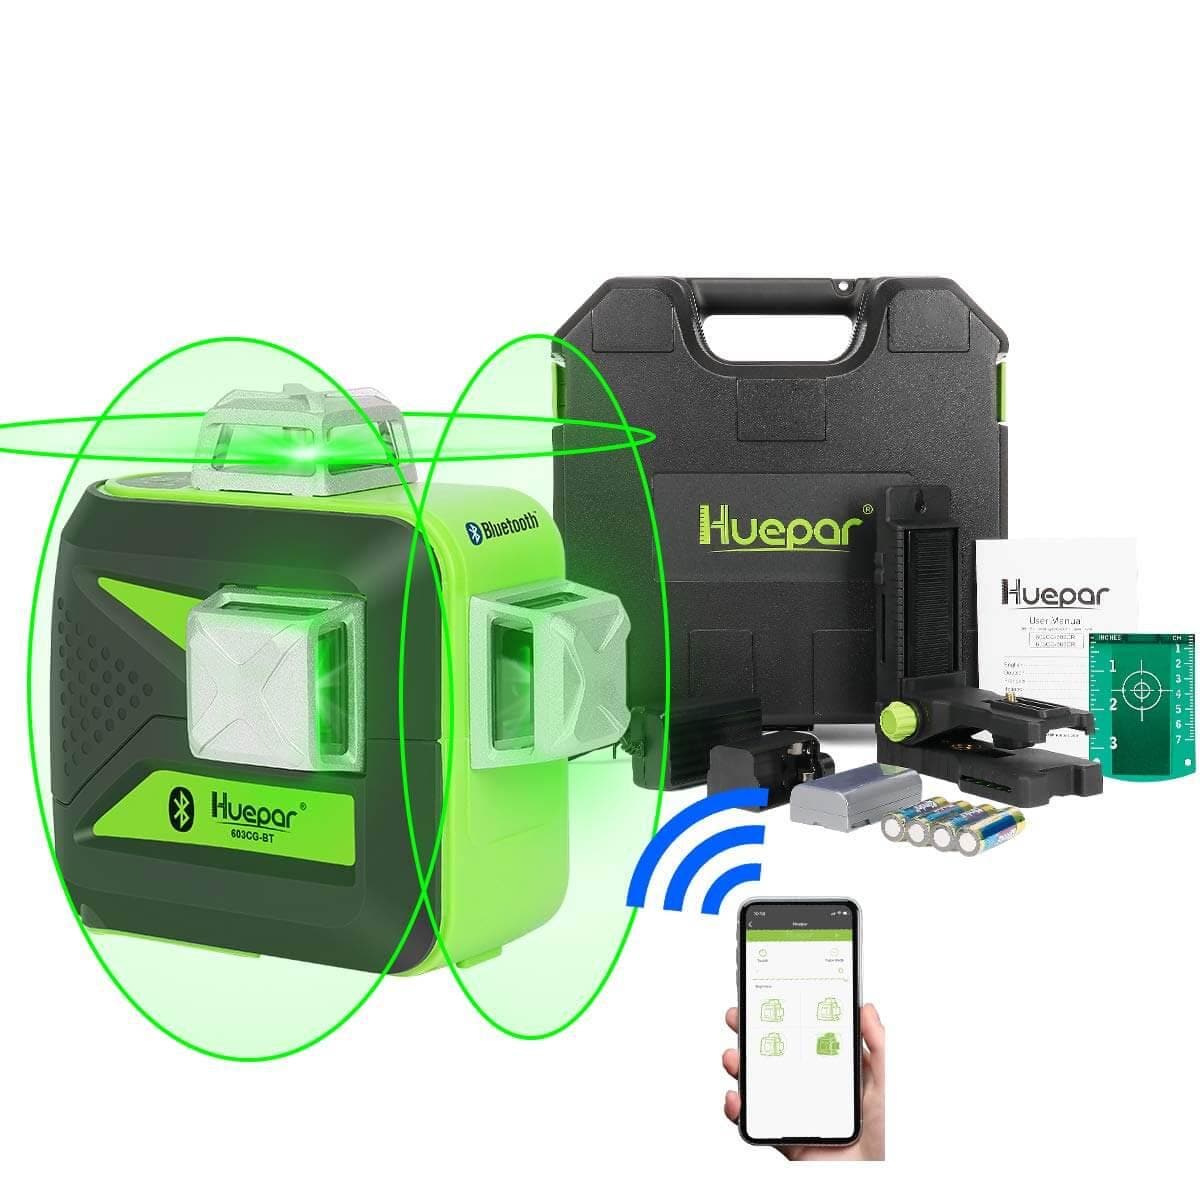 Huepar 603BT-H - 3D Green Beam Self-Leveling 3 X 360° Laser Level with Hardcase